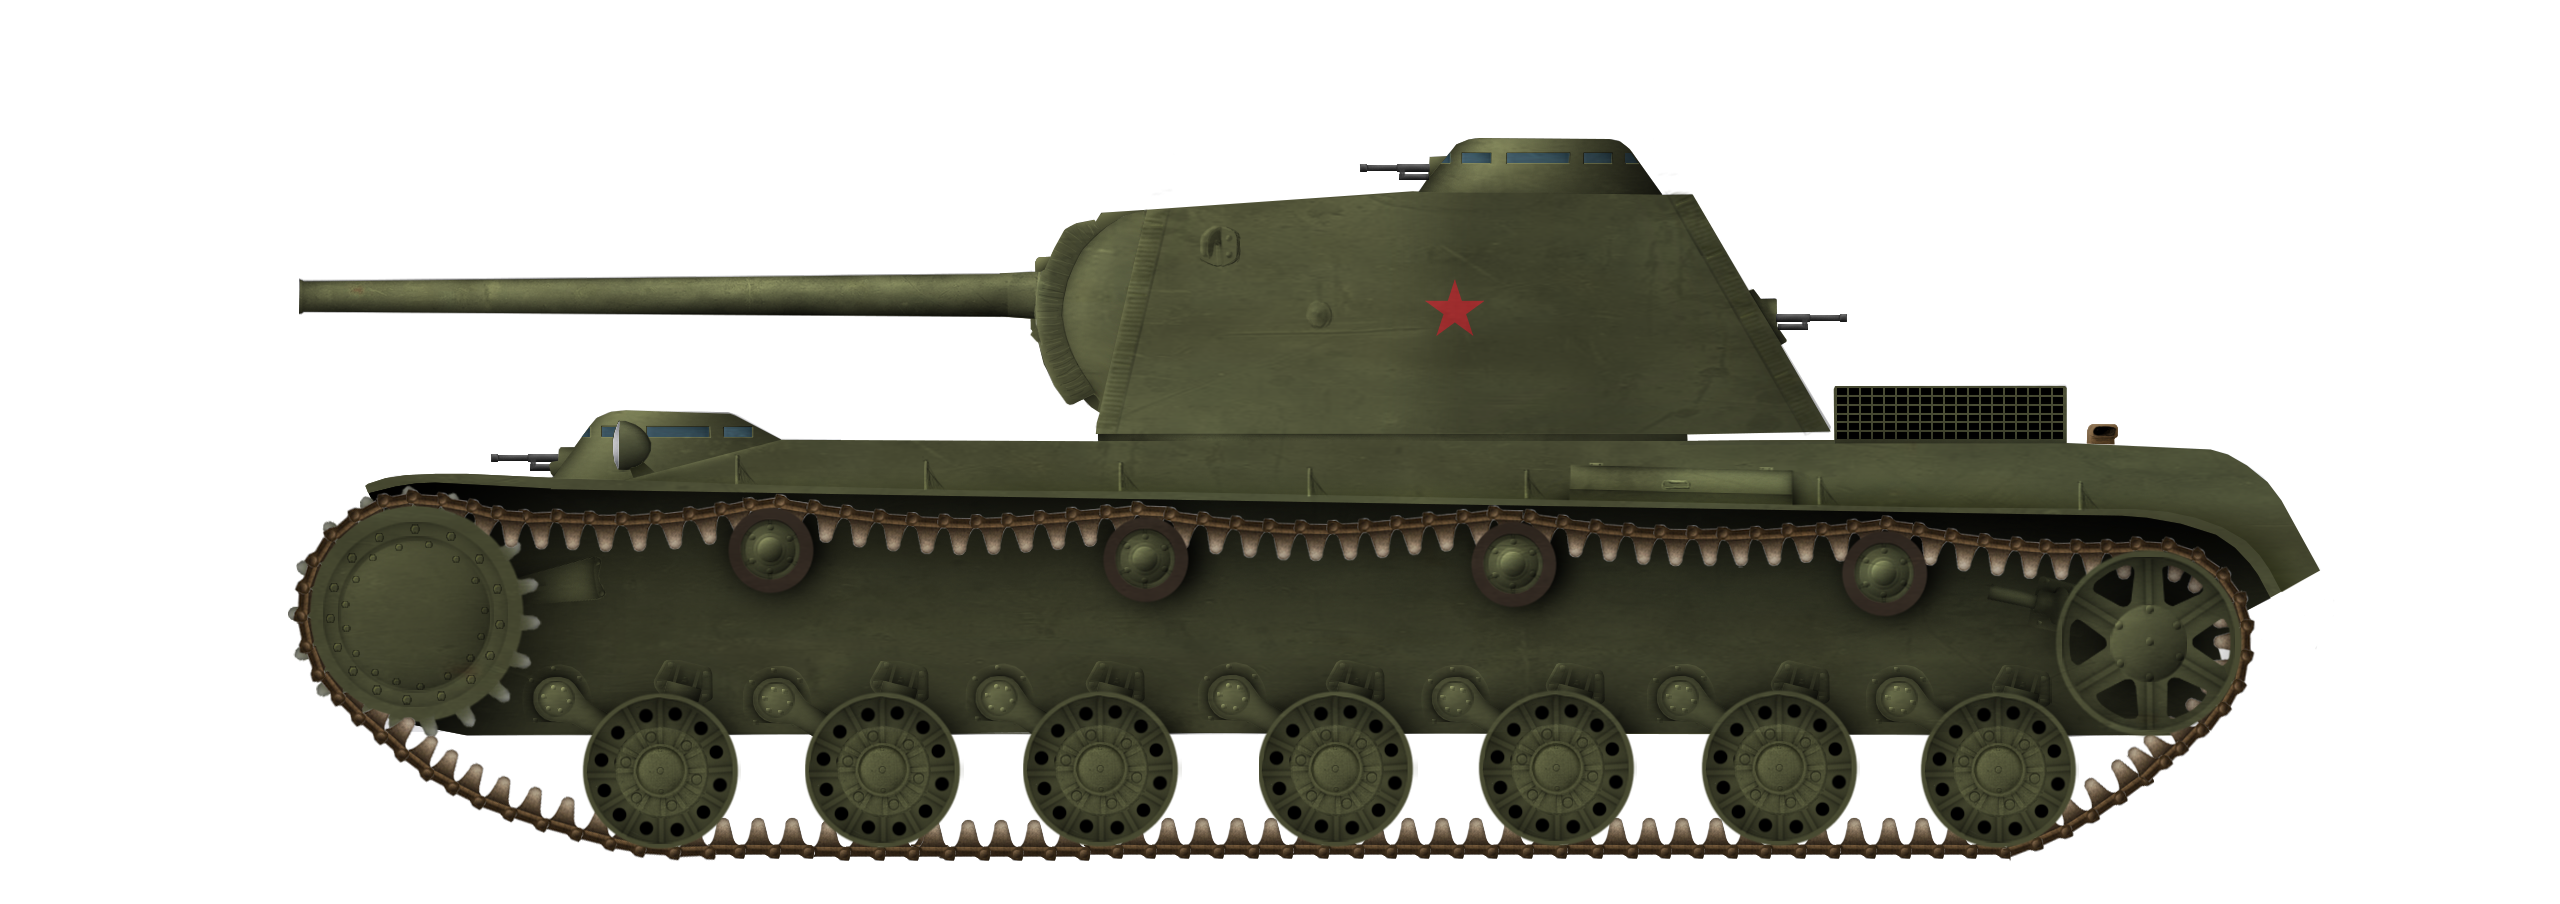 KV-4 (Object 224) Kreslavsky